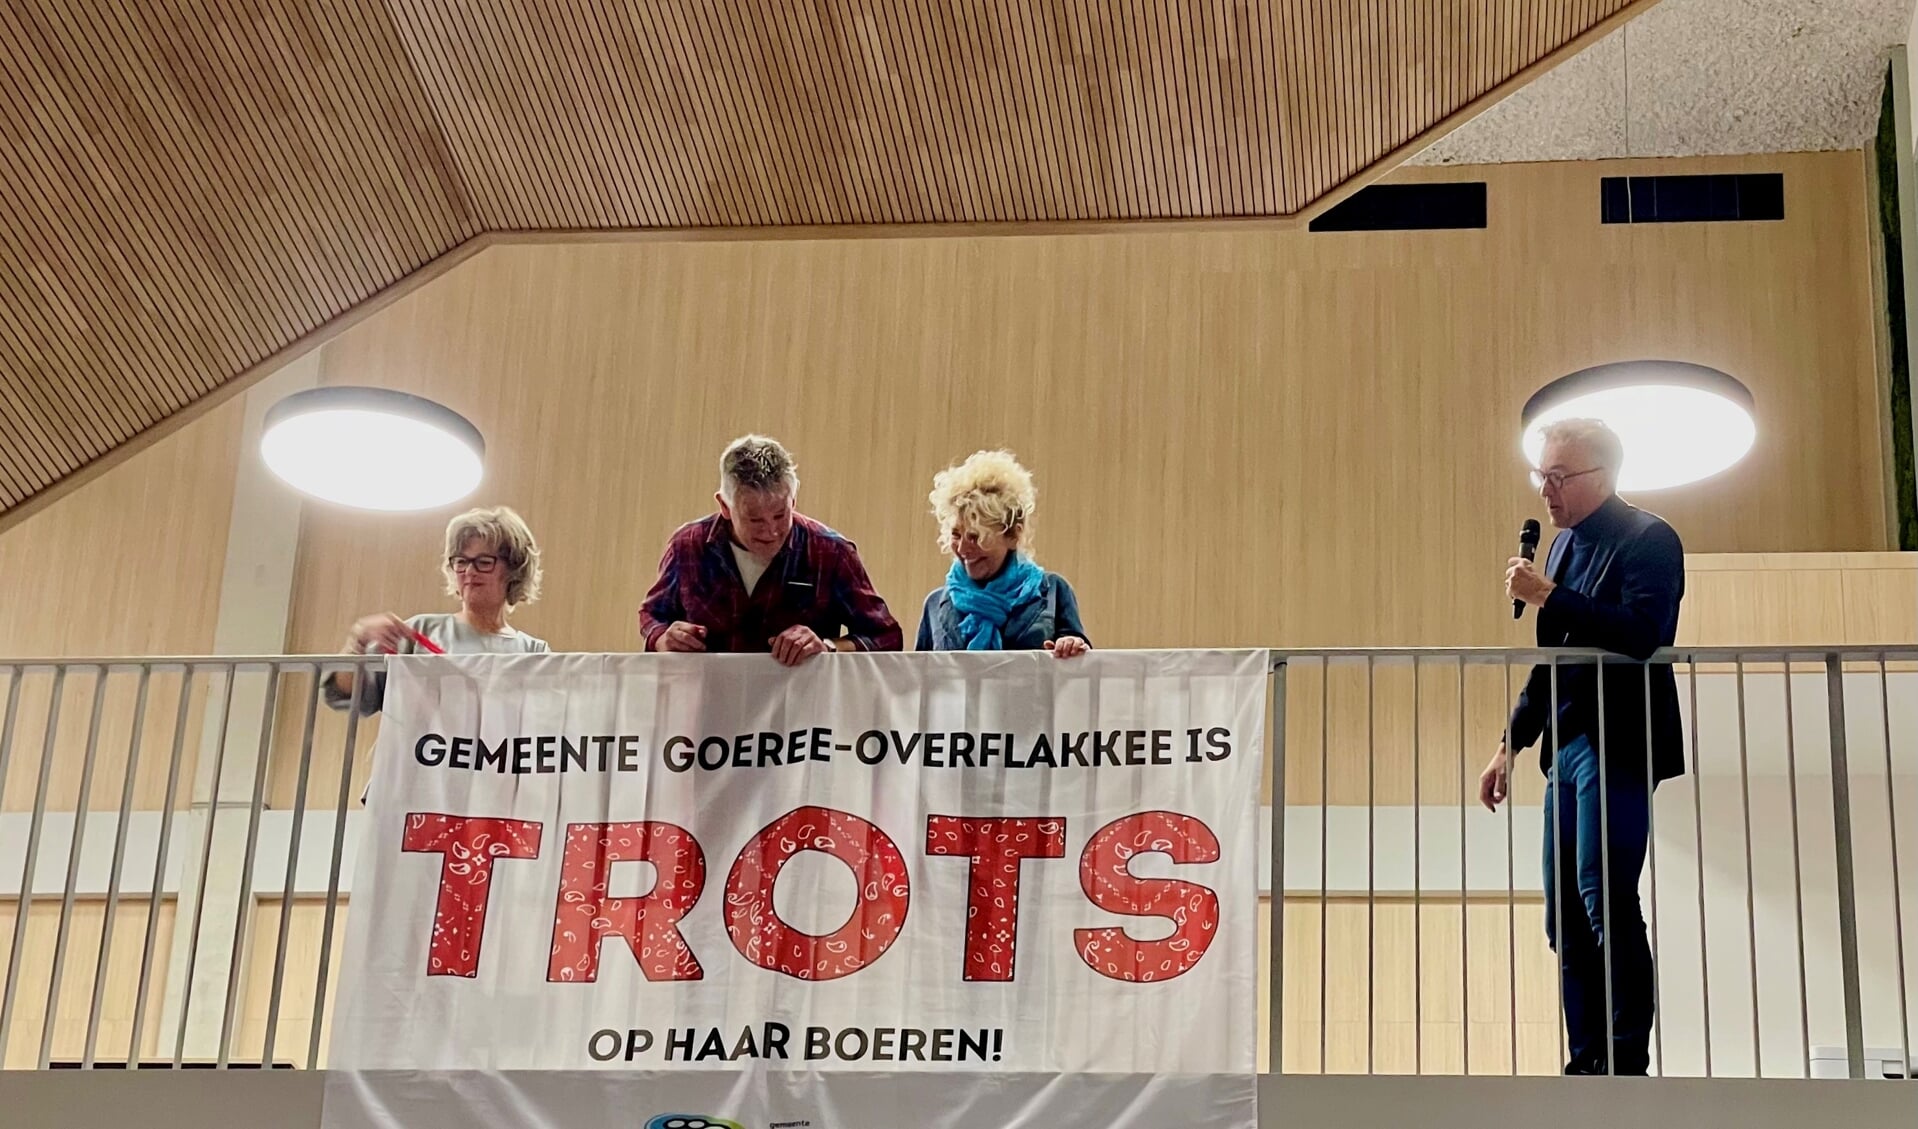 De onthulling van de boerenvlag, van links naar rechts: burgemeester Ada Grootenboer, ondernemers Sjef de Baar en Liesbeth Soldaat, wethouder Henk van Putten. 